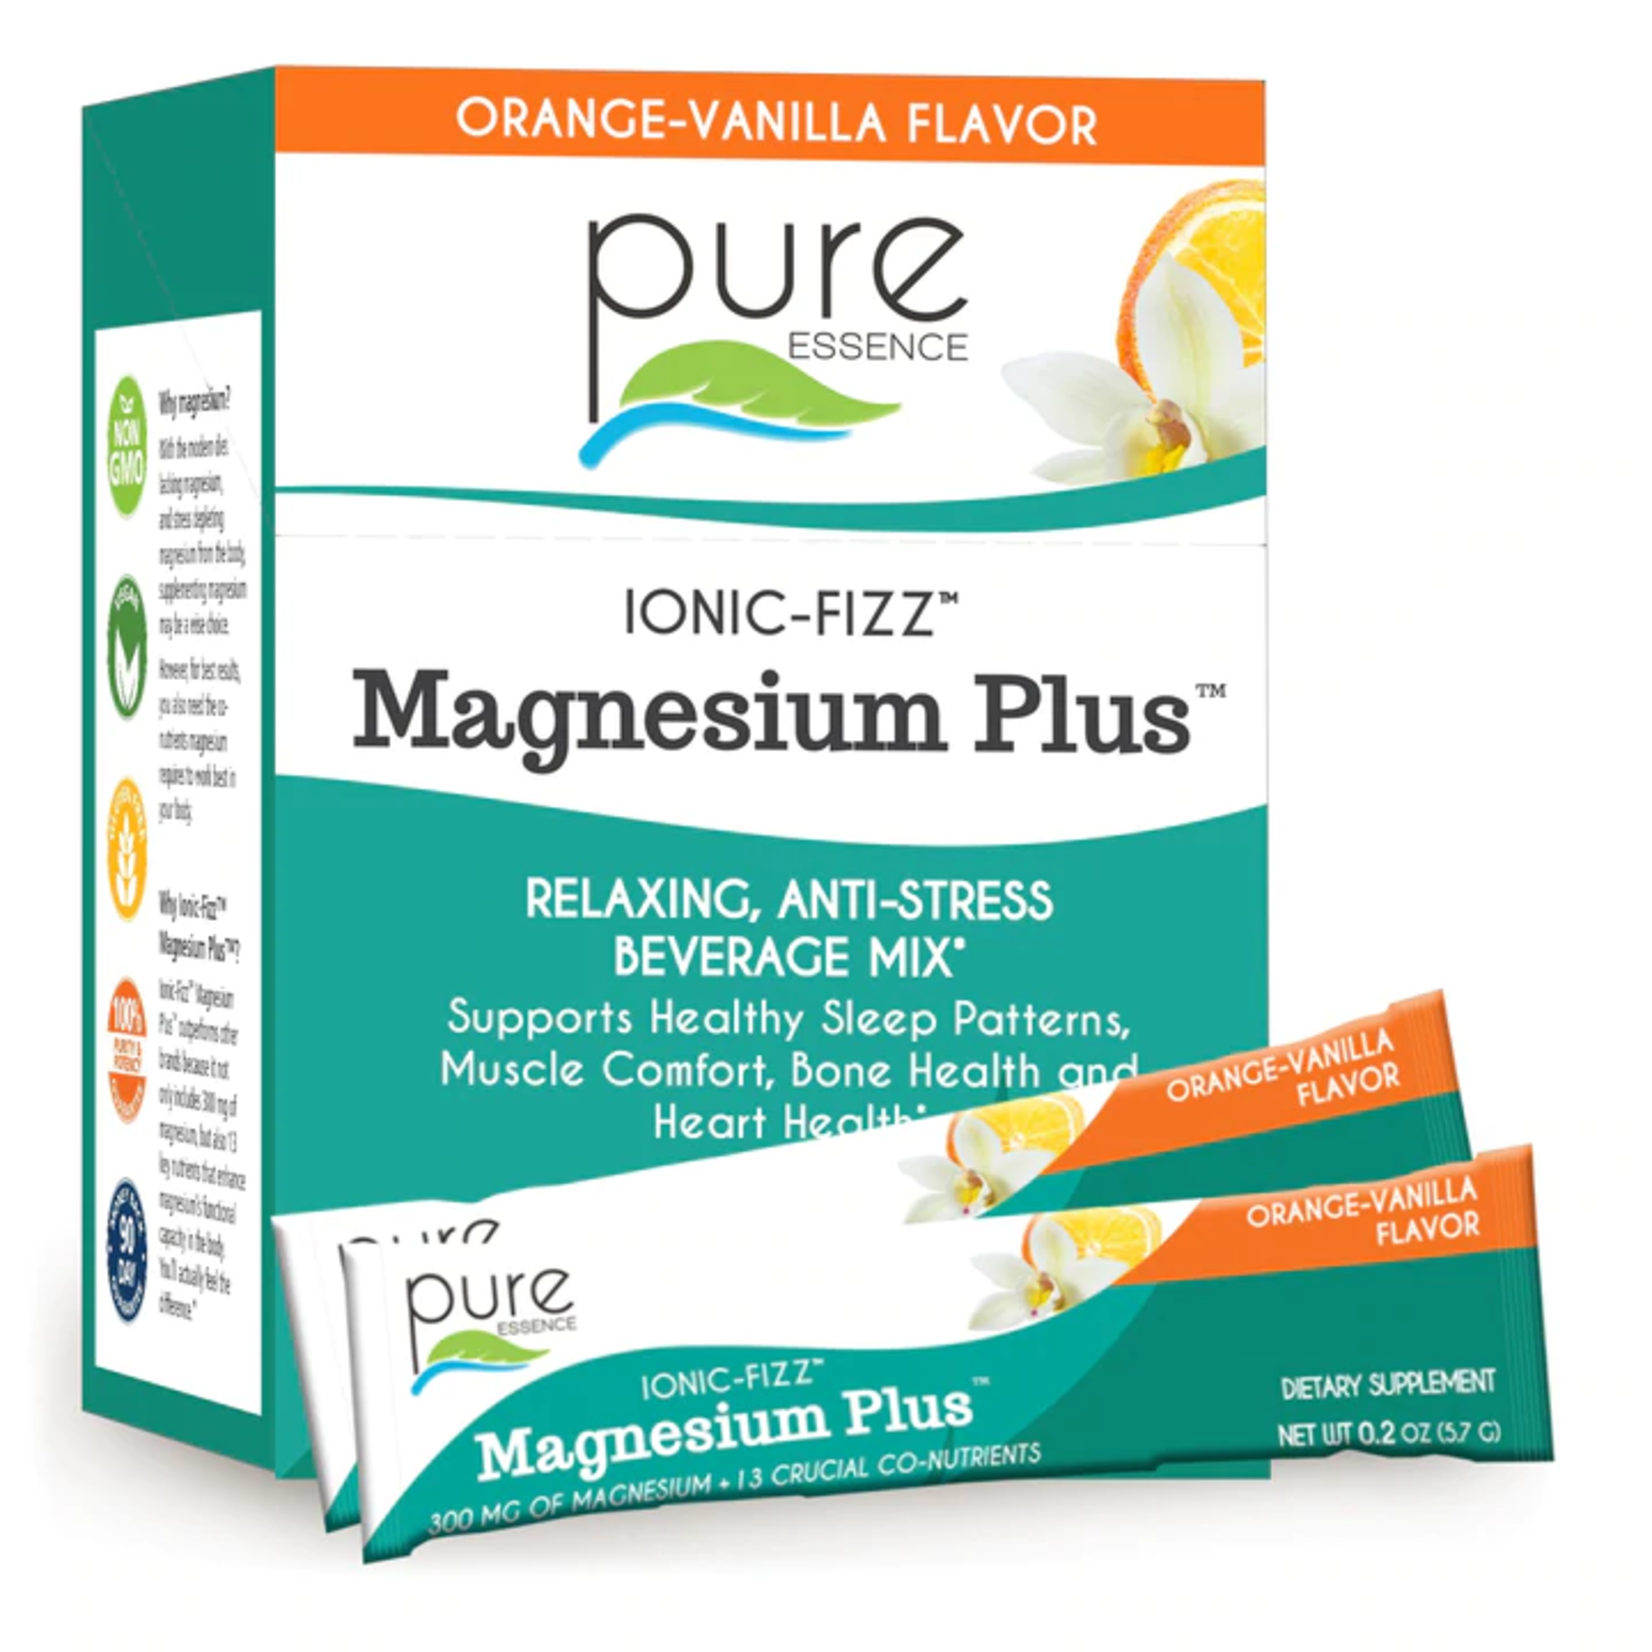 Pure Essence Ionic-Fizz Magnesium Plus Orange & Vanilla 30ct Box